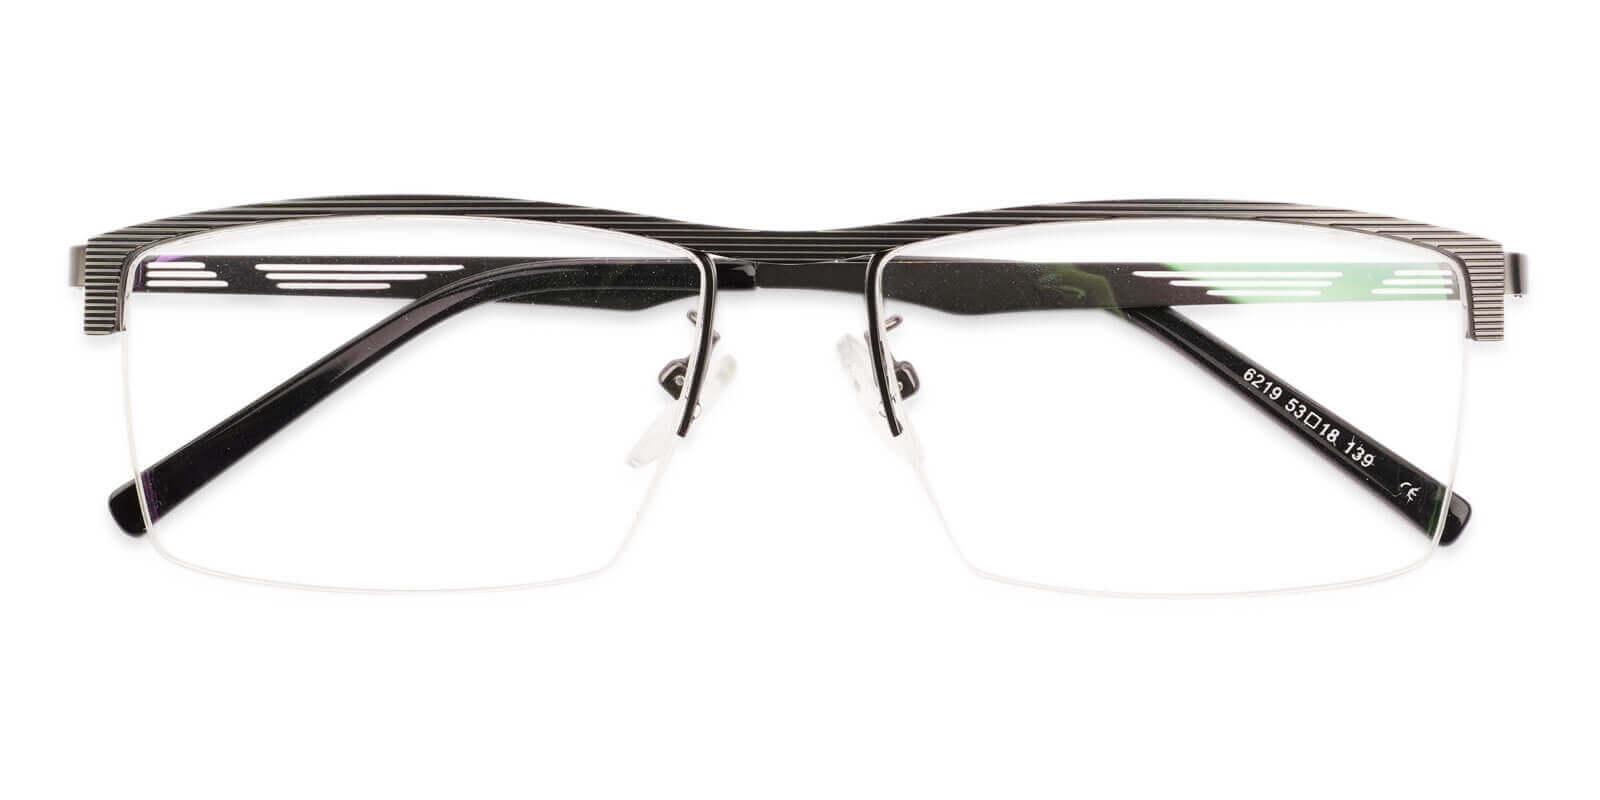 Henry Gun Metal Eyeglasses , NosePads Frames from ABBE Glasses